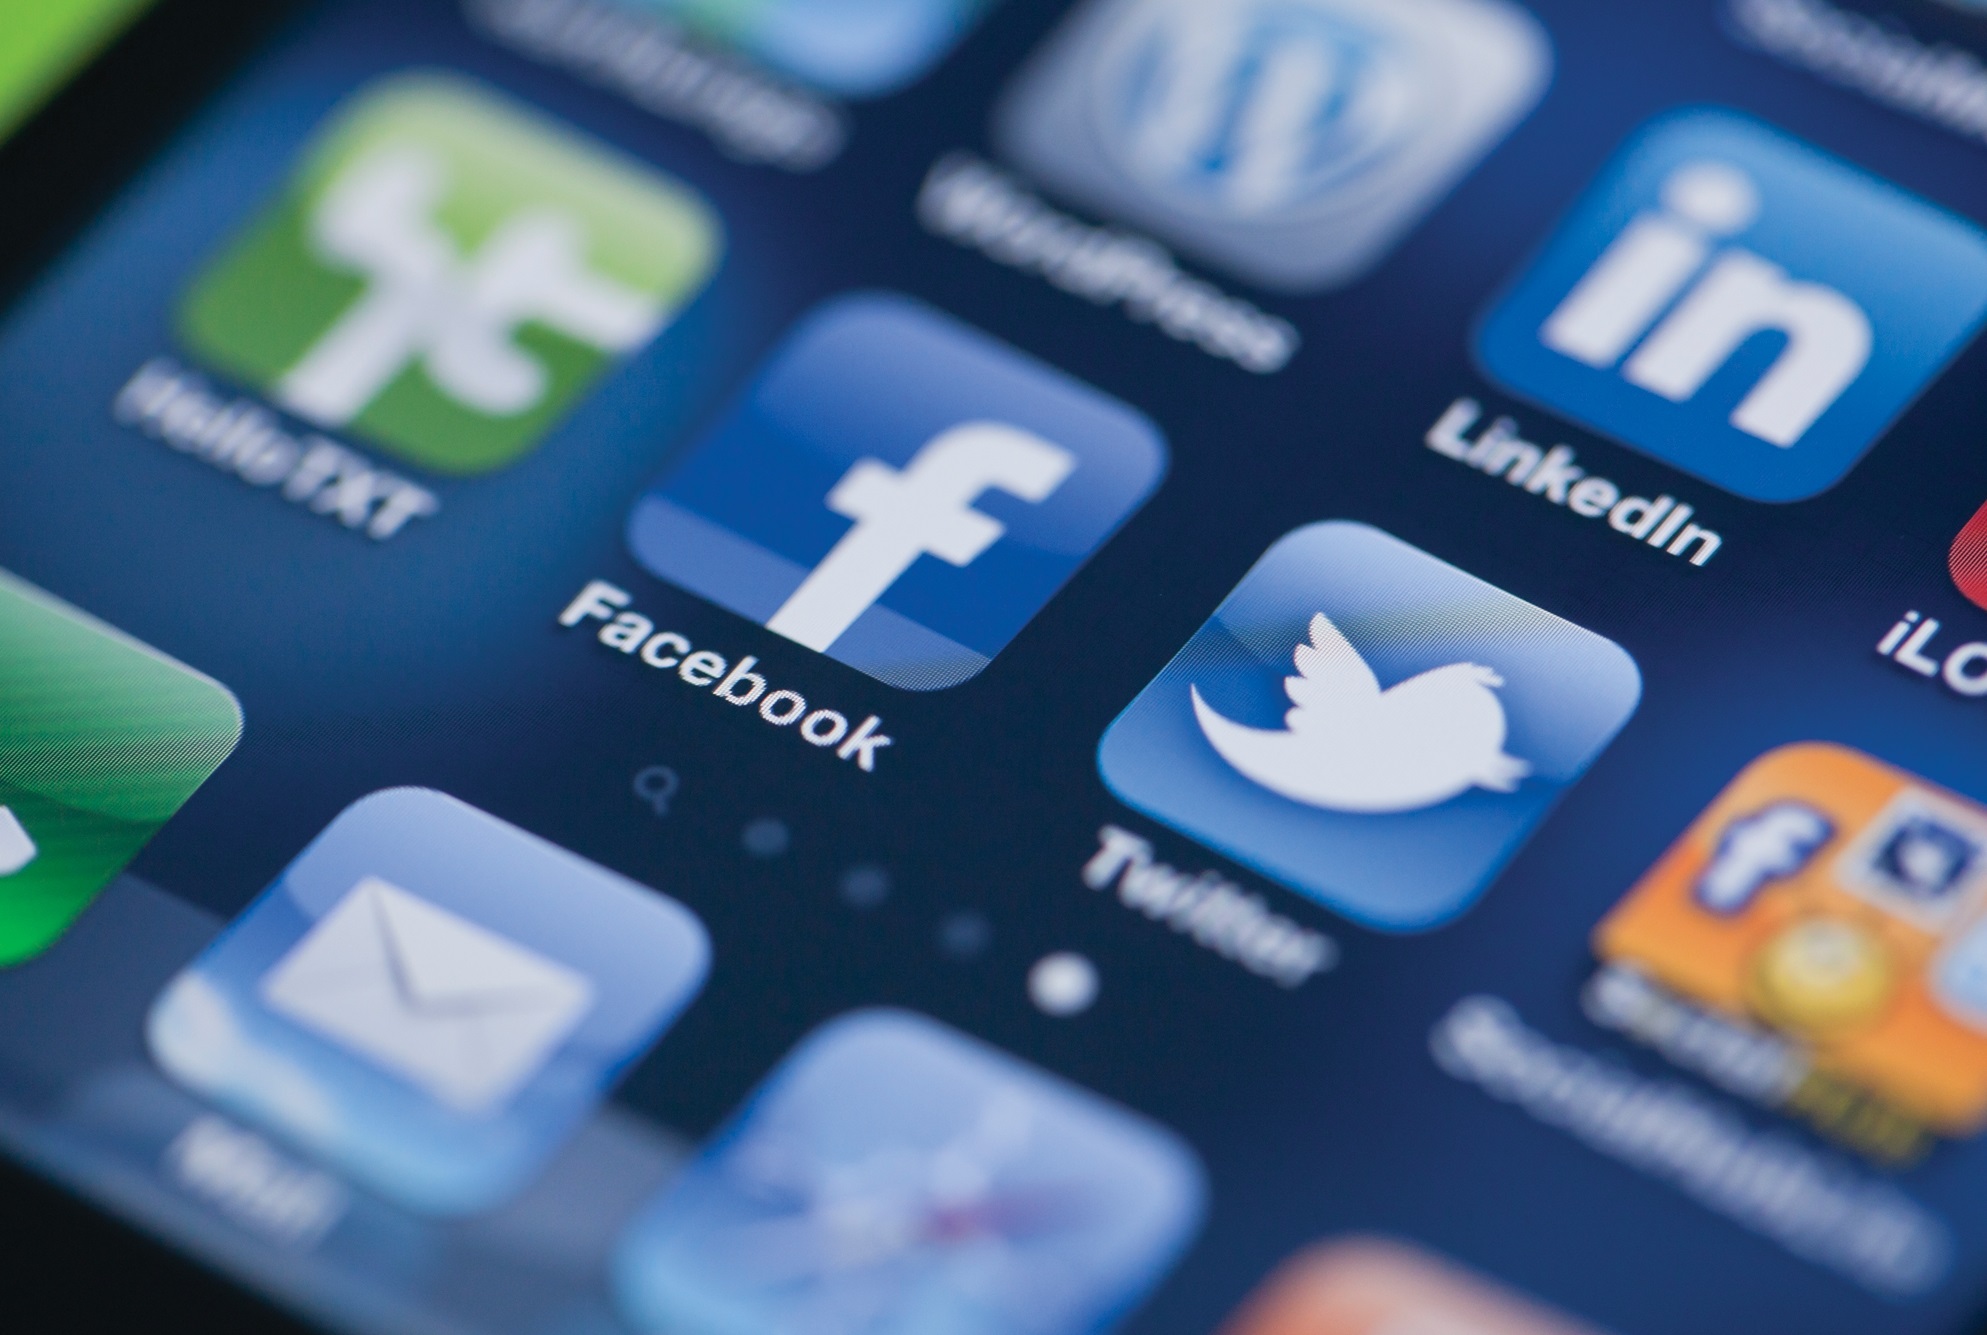 Ψηφιακό αποτύπωμα: Καθαρίστε τα μέσα κοινωνικής δικτύωσης και τους κωδικούς πρόσβασης